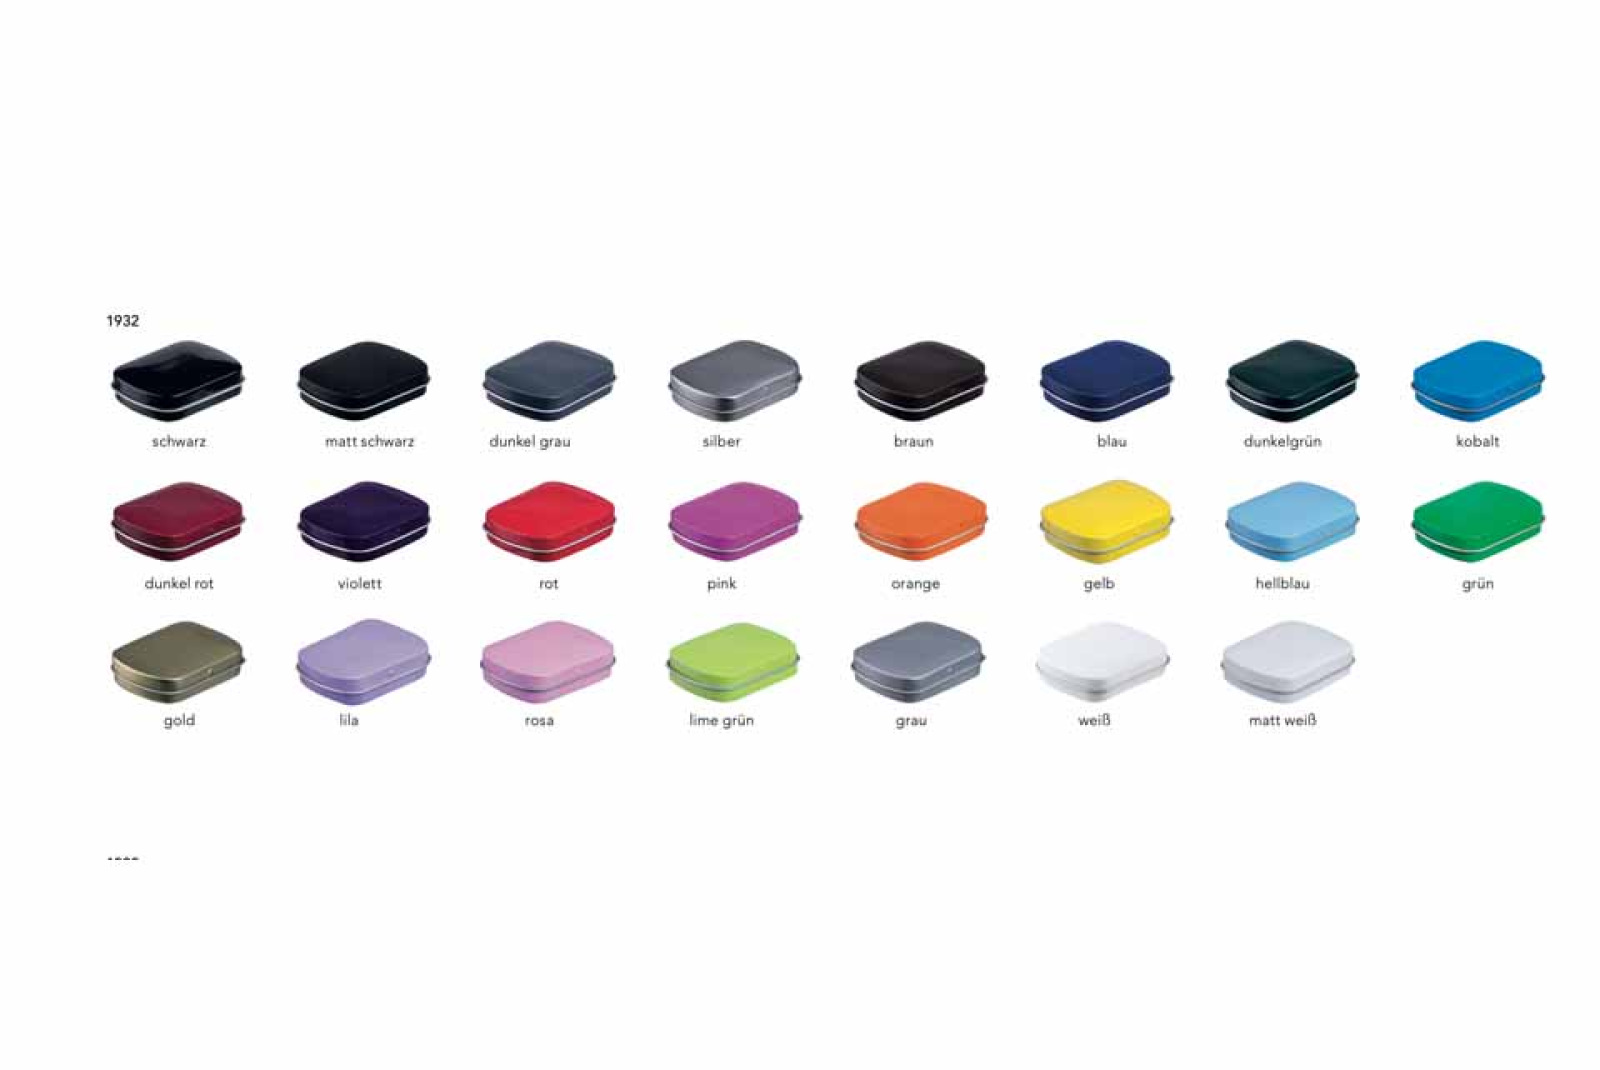 Farbübersicht der 23 Standardfarben der Pfefferminzdose